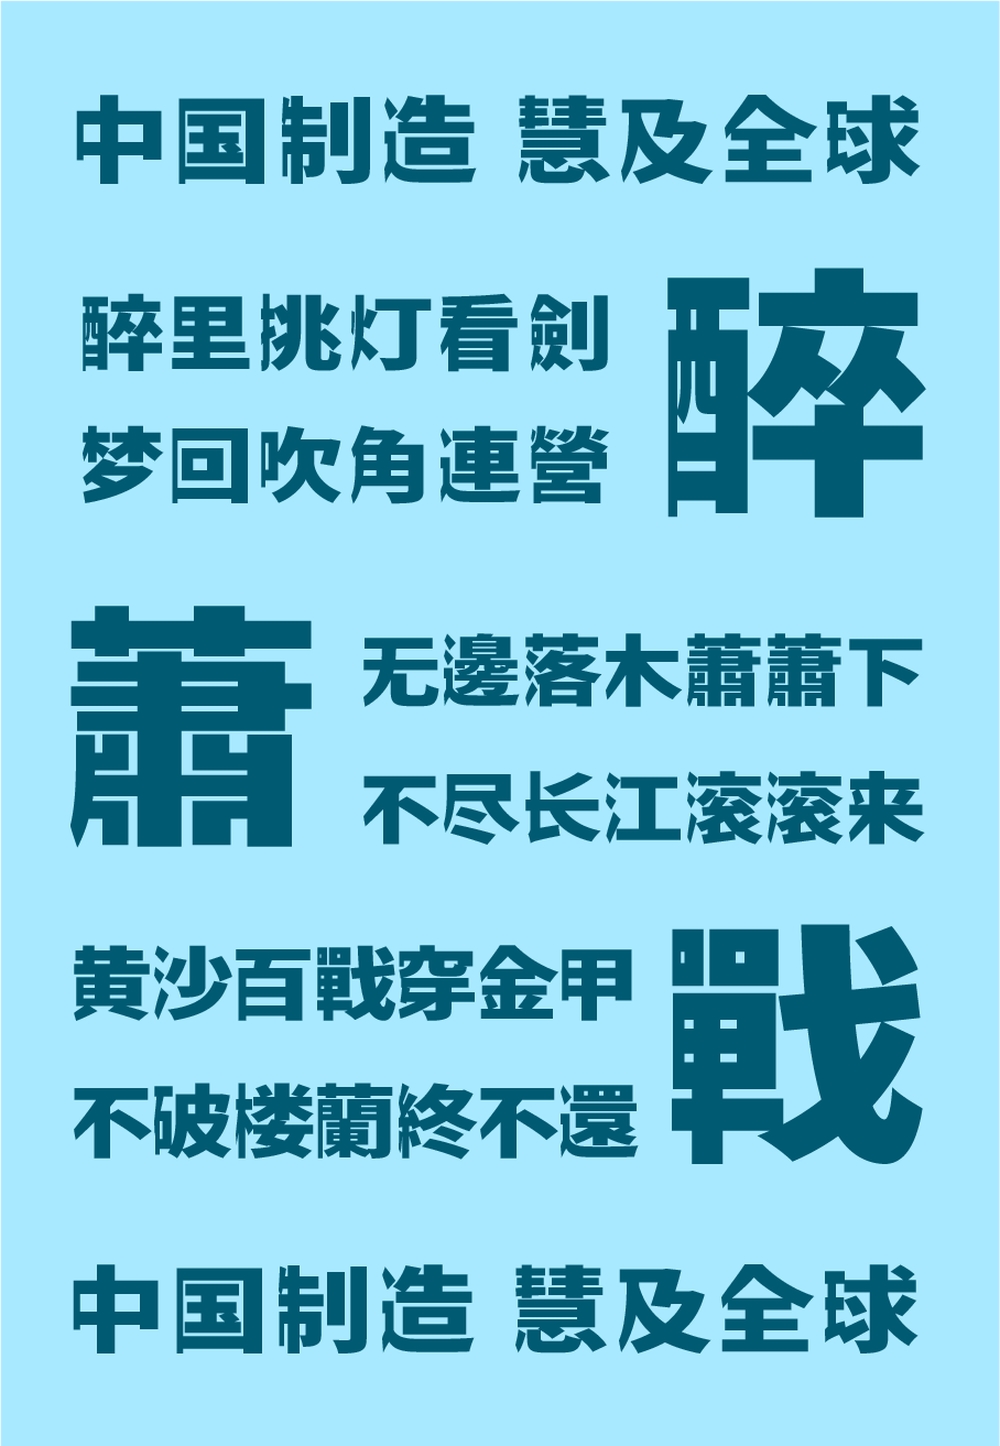 瀞之库格尔黑体｜具有独特视觉的免费可商用日式中文字体